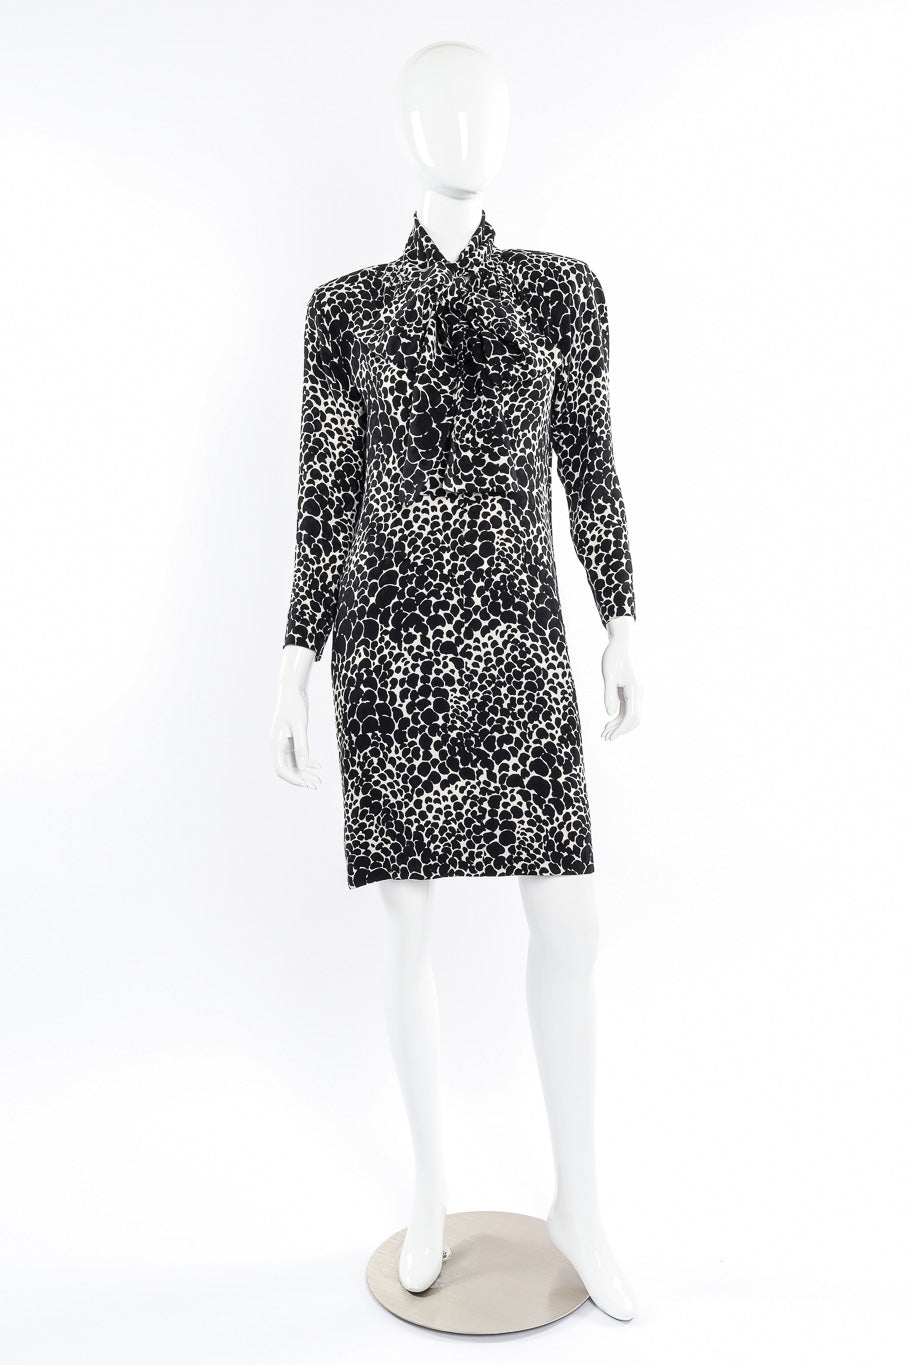 Vintage Saint Laurent Petal Print Silk Dress front view on mannequin @Recessla